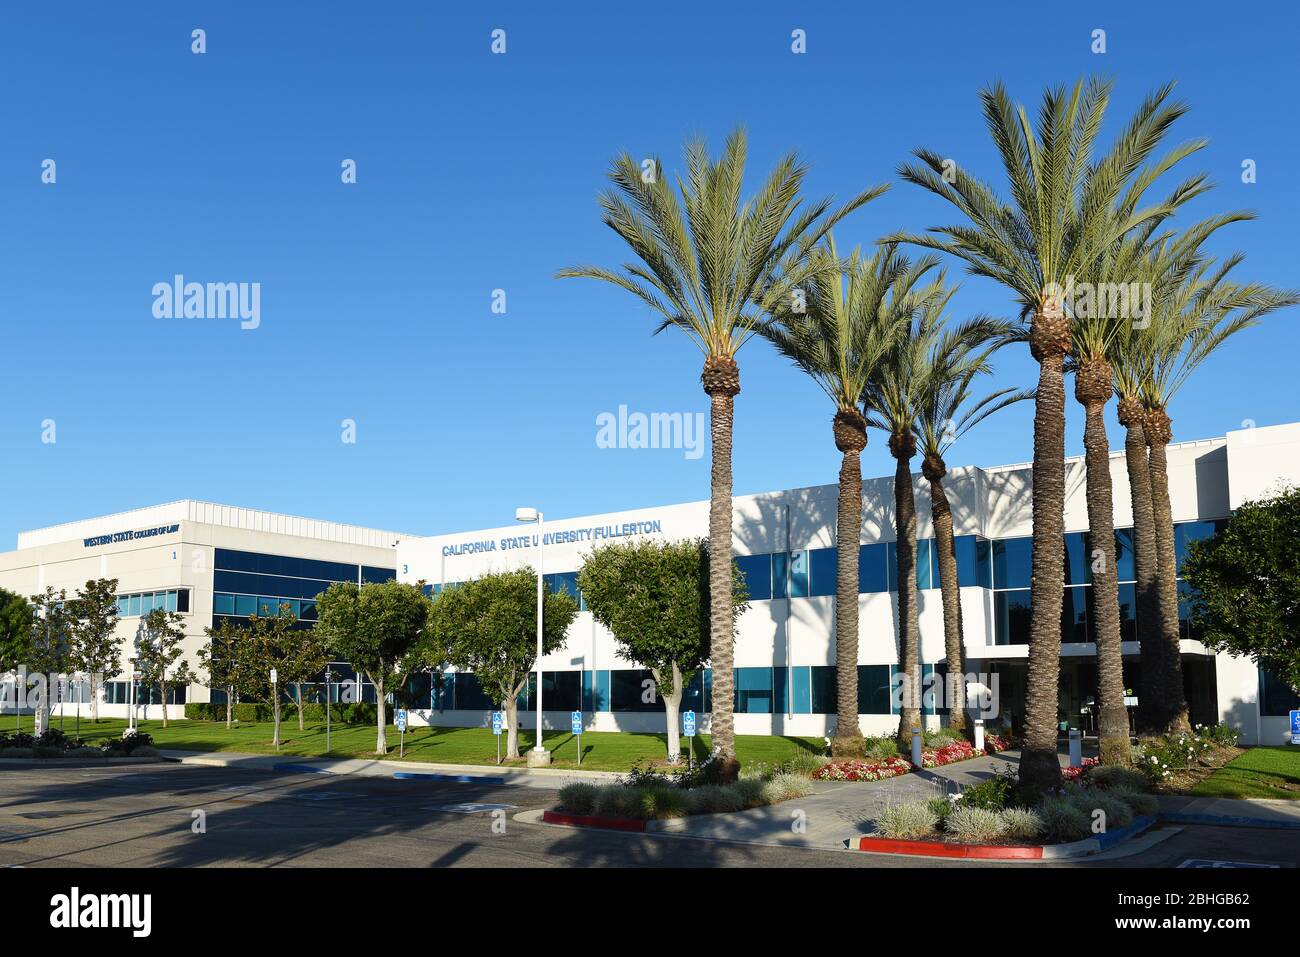 IRVINE, CALIFORNIE - 25 AVRIL 2020: Le campus Irvine de l'Université d'État de Californie Fullerton et le Western State College of Law. Banque D'Images